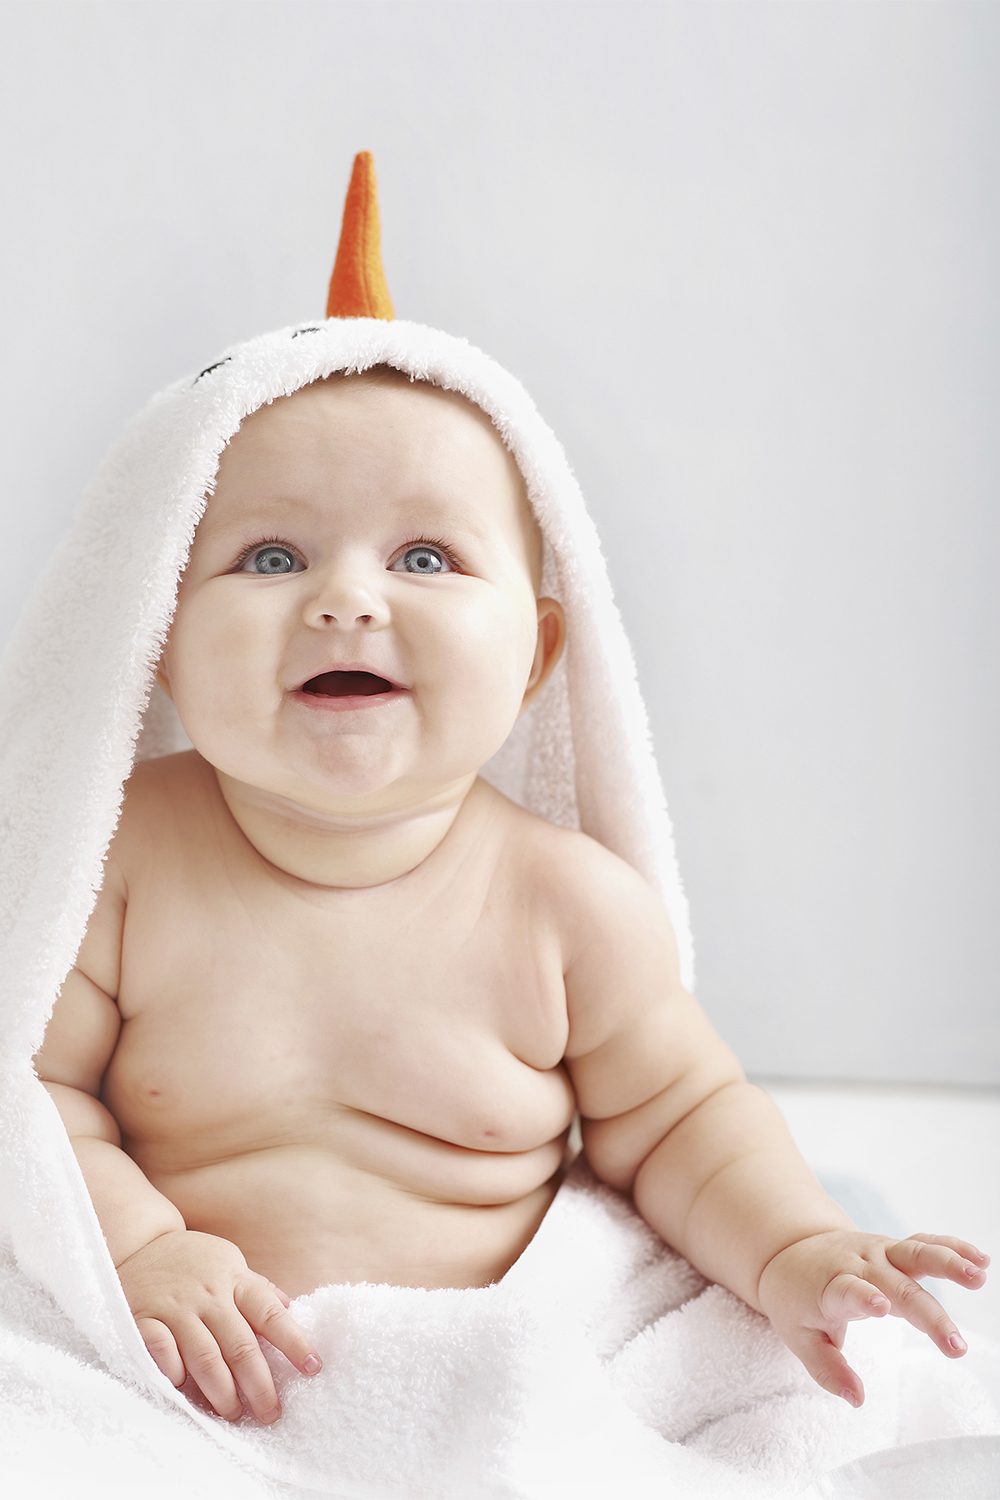 COMEÇO ERRADO - Dobrinhas demais: no Brasil, 8% dos bebês até 2 anos estão acima do peso -